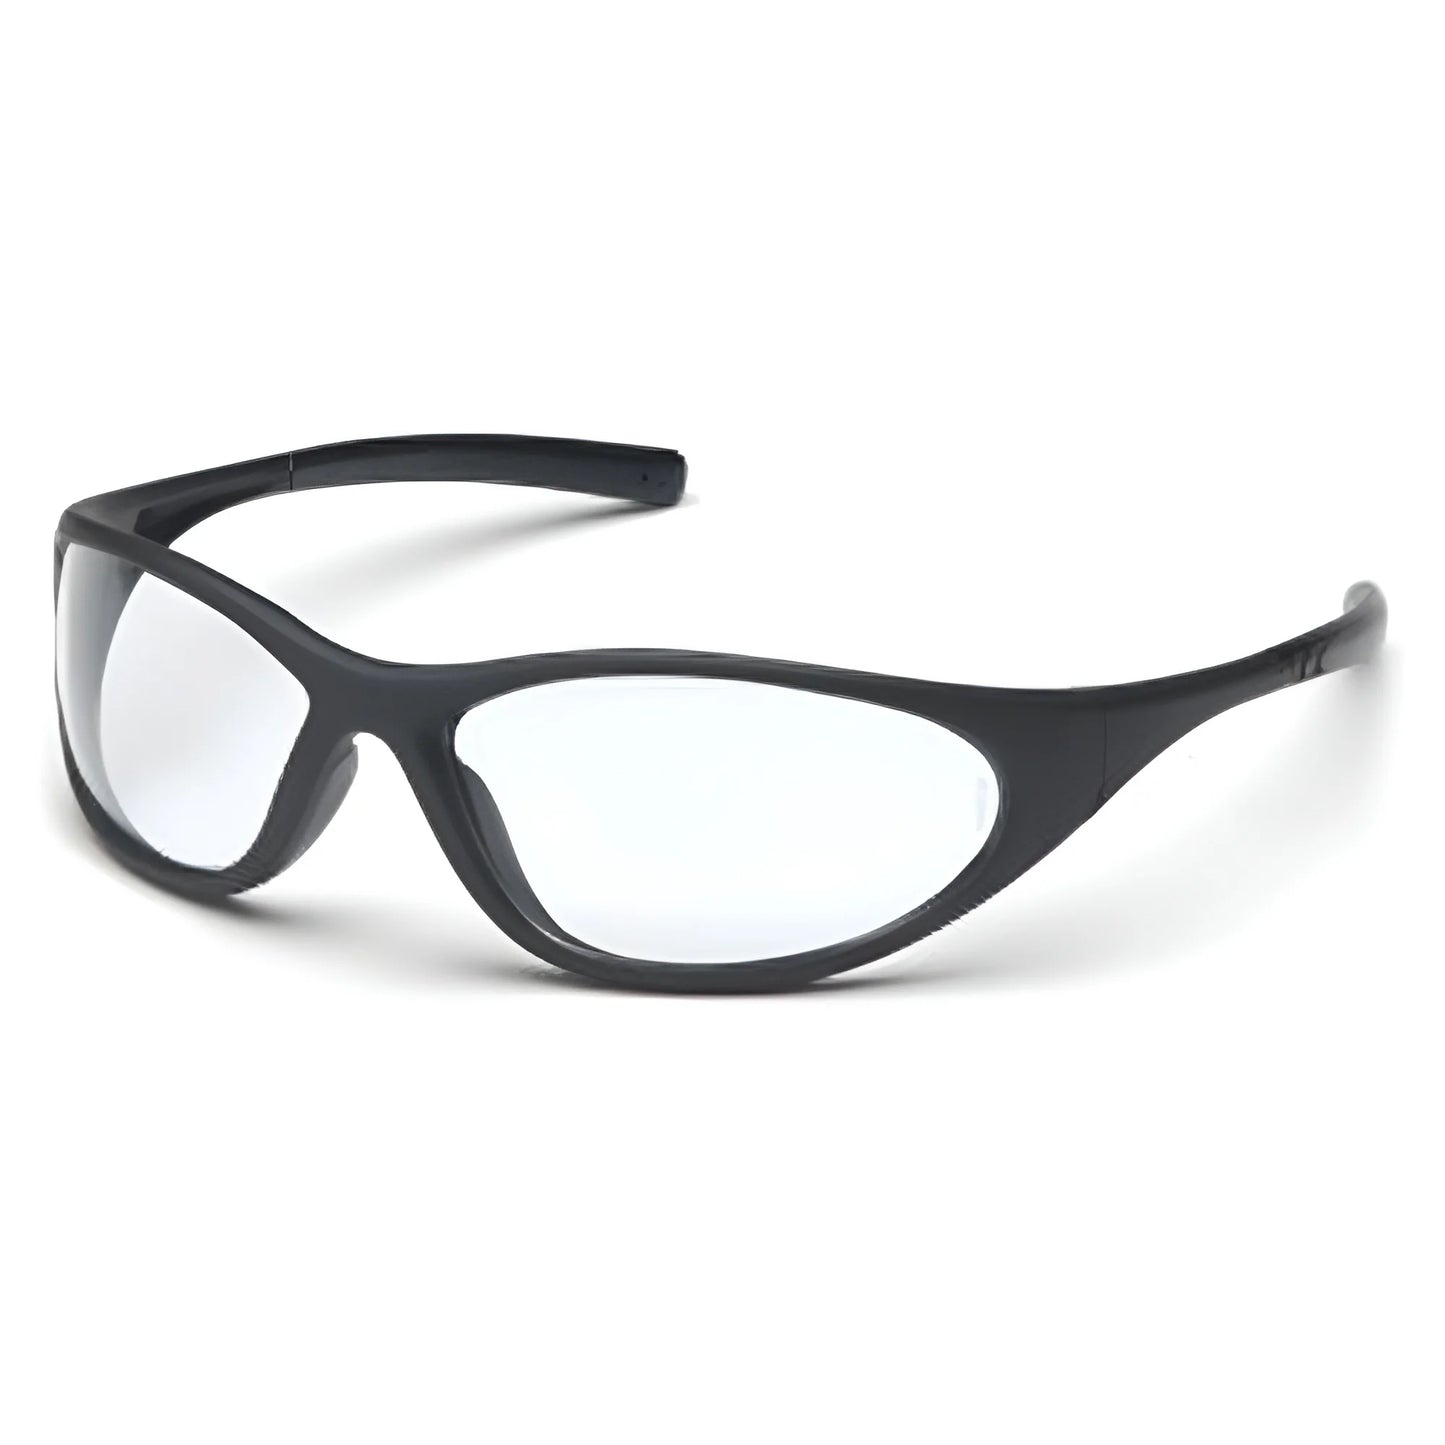 Pyramex ZONE Safety Glasses